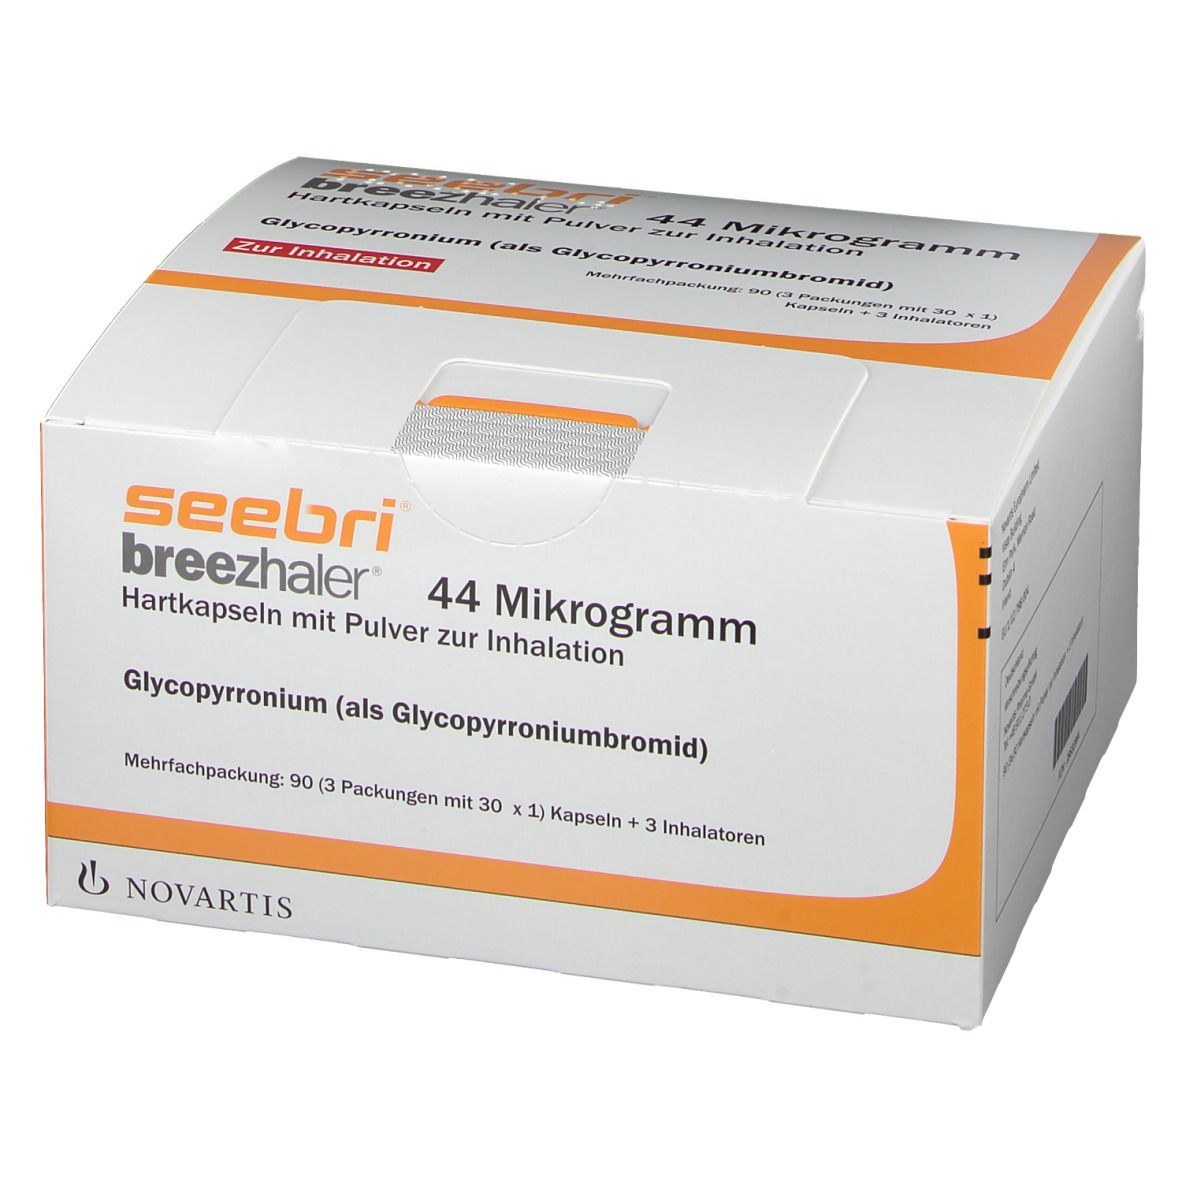 seebri® breezhaler® 44 Mikrogramm